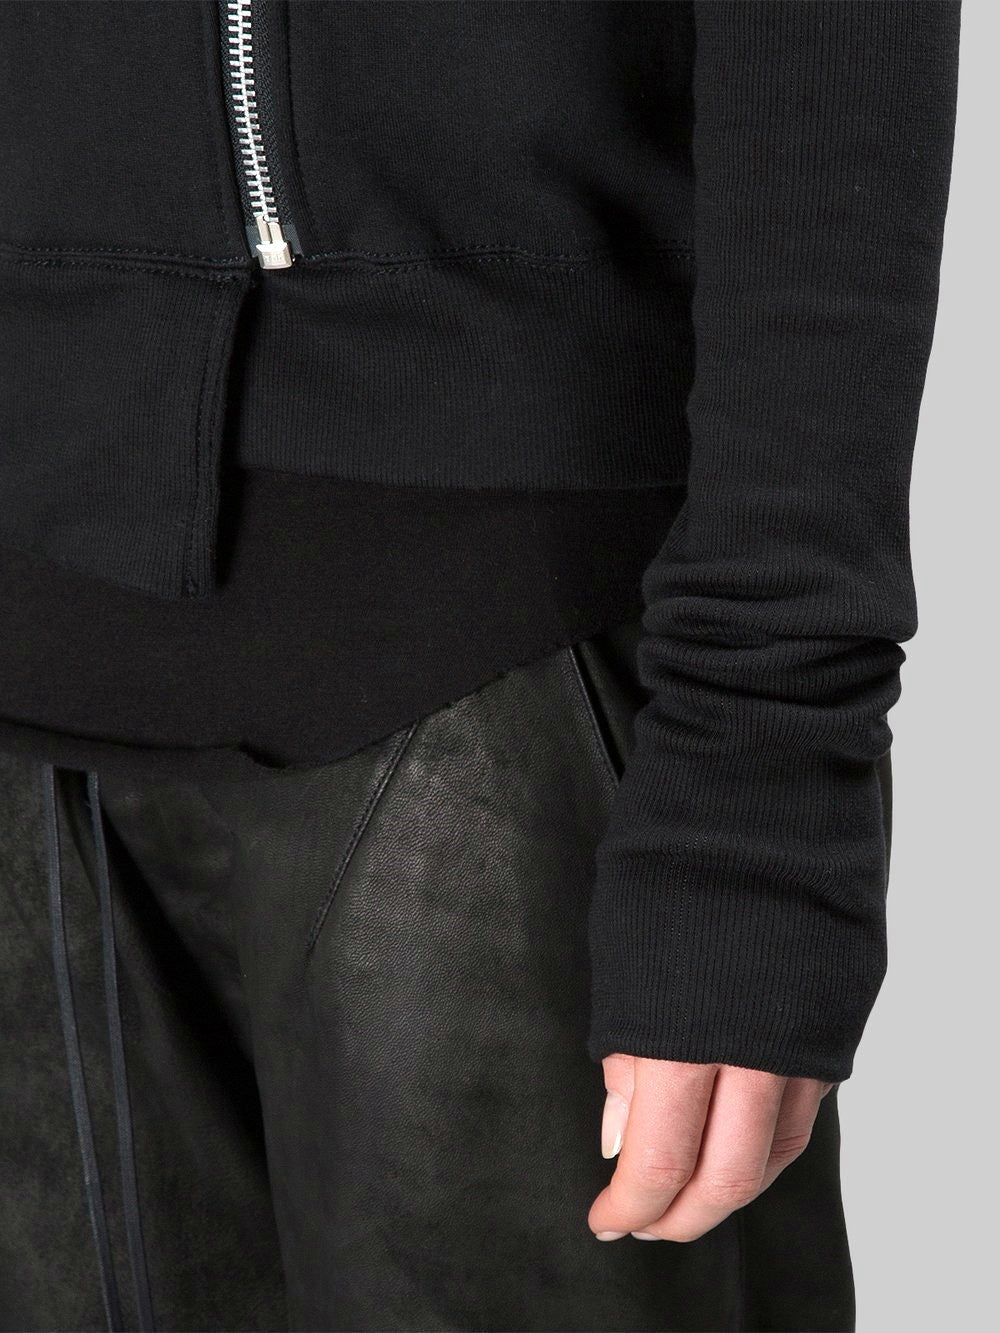 Black Assimetric Zip Collar Comb / Fleece Hood Sweatshirt Hoodie Dark